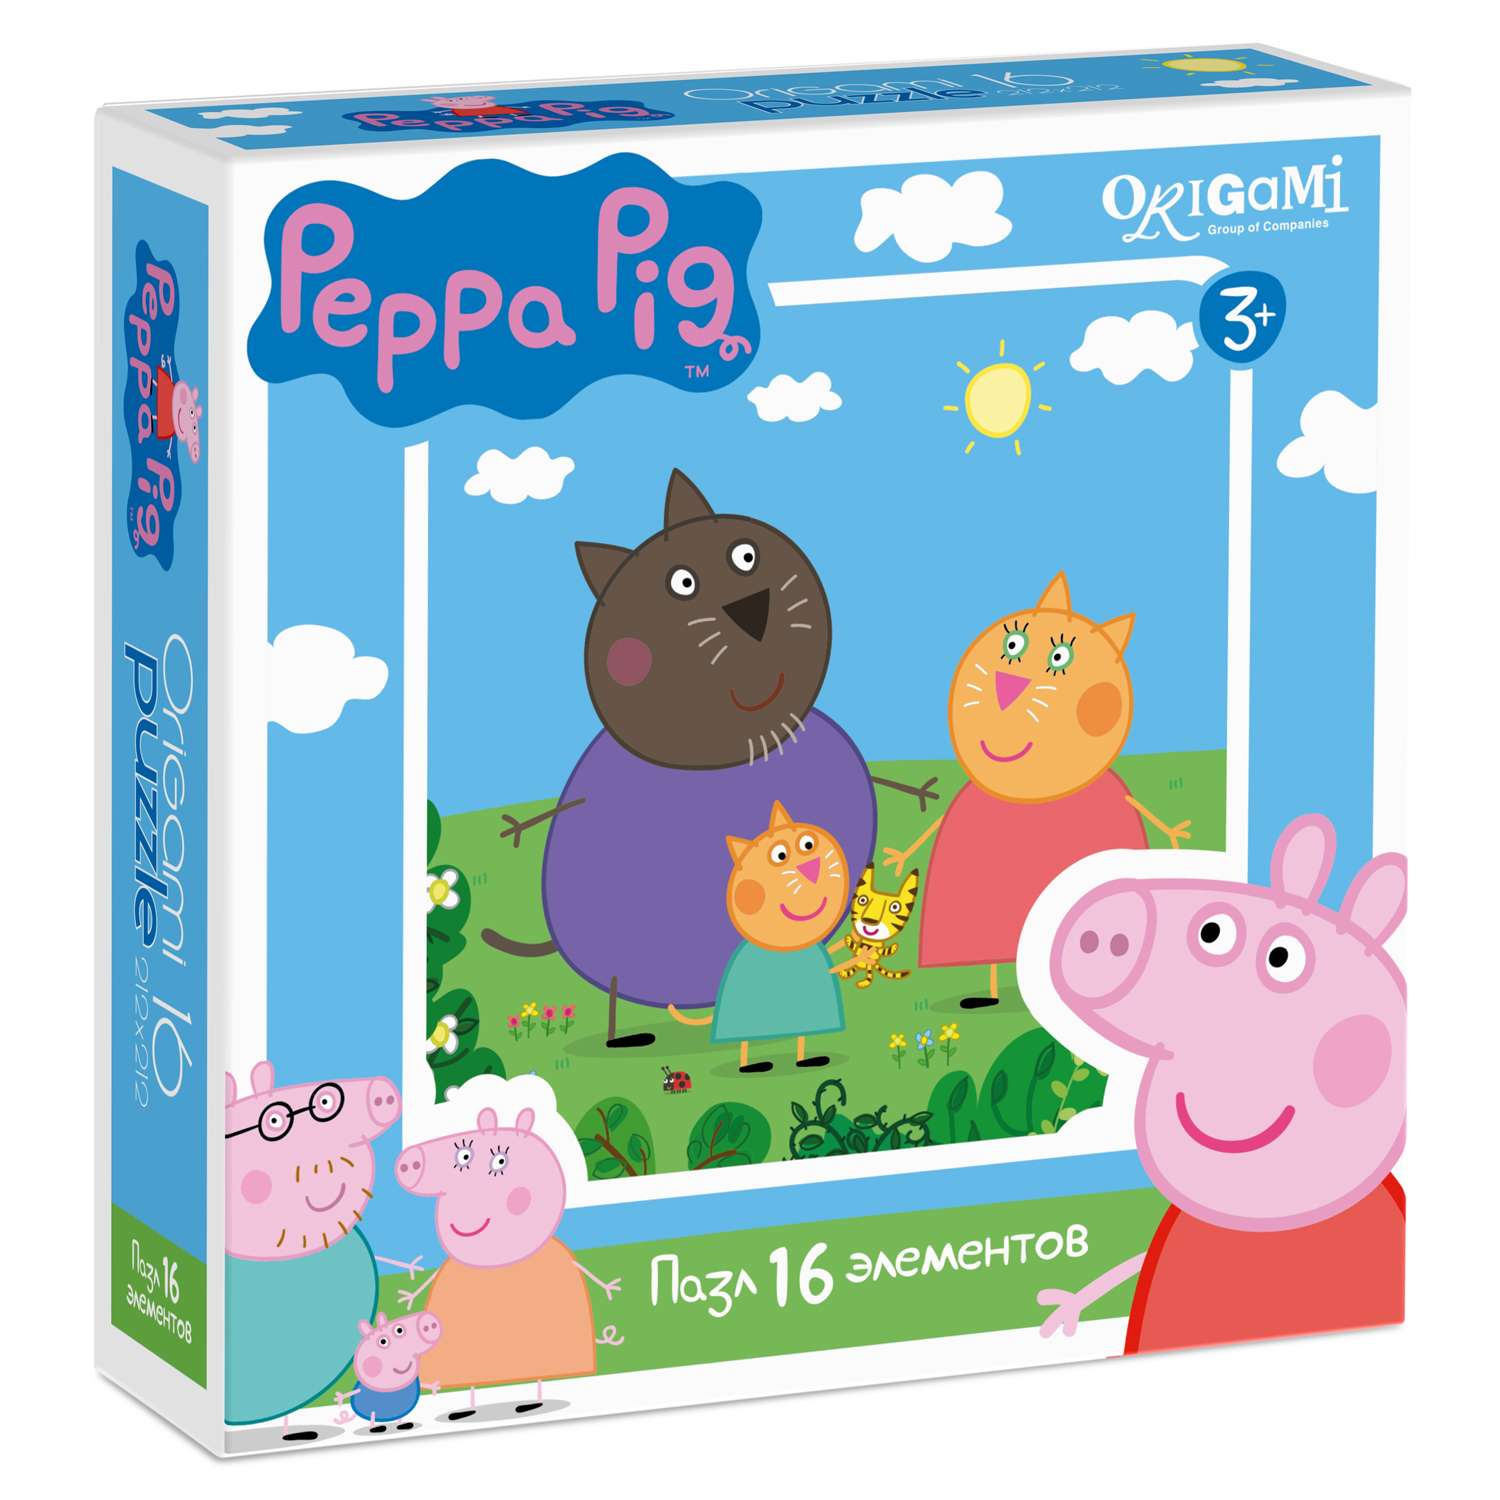 Пазлы ORIGAMI Peppa Pig 16 элементов в ассортименте - фото 5